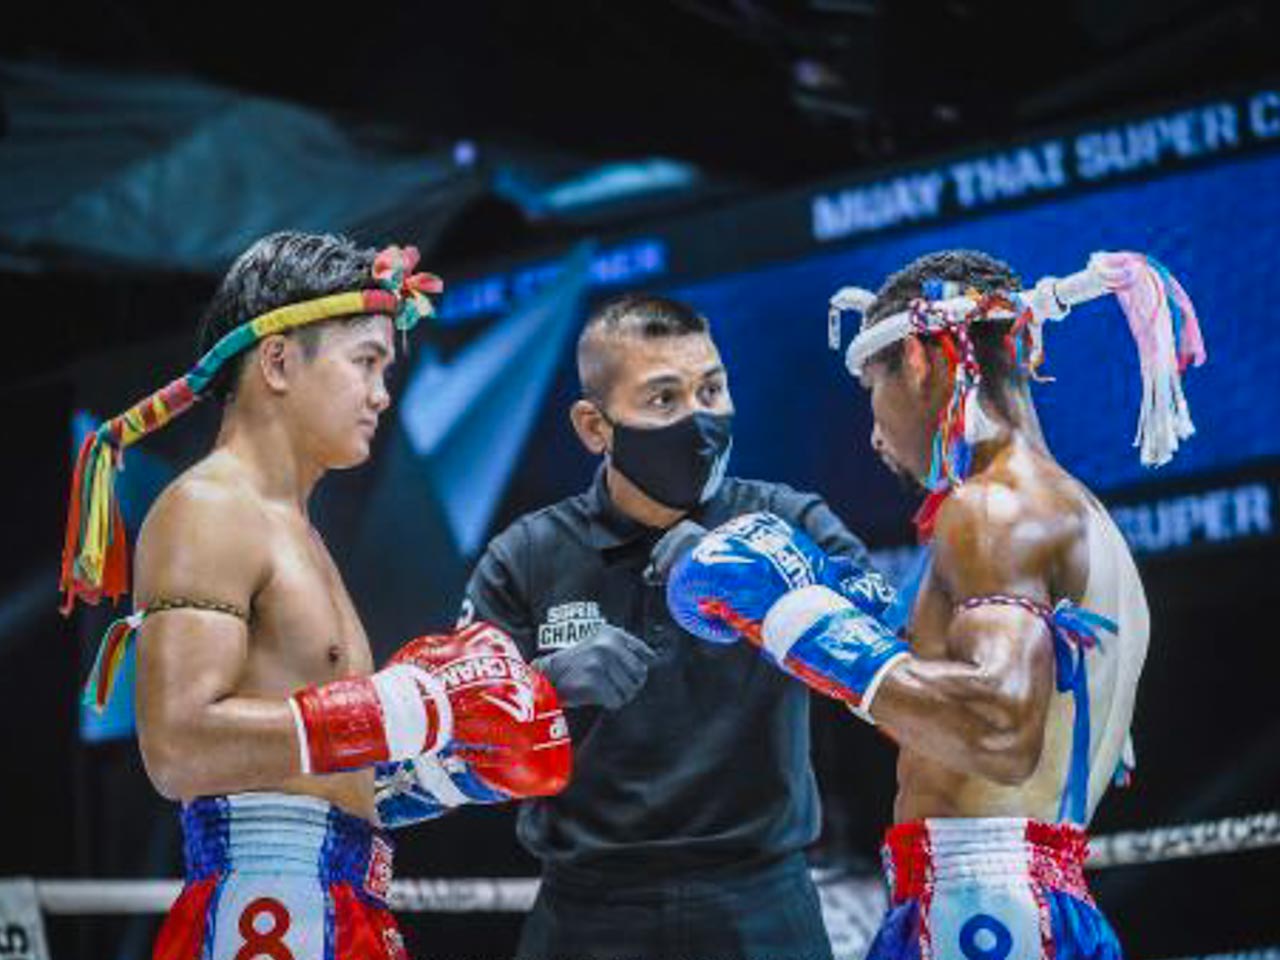 Entrevista com brasileiro ganha luta de muay thai na Tailândia